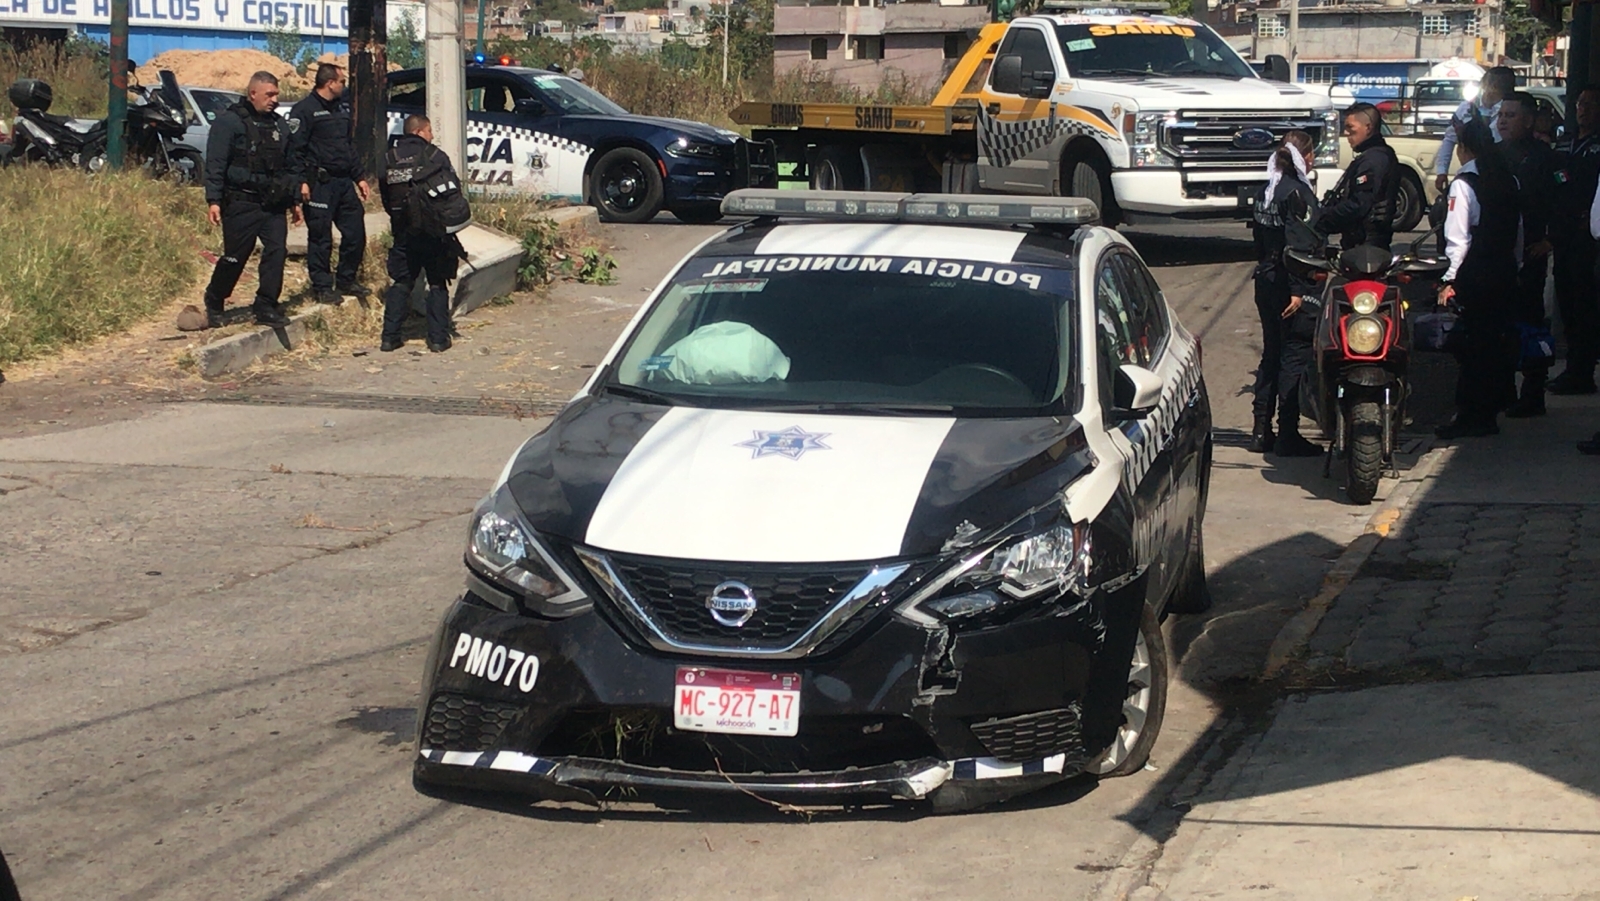 Patrulla de la Policía Morelia choca contra un muro, deja 2 heridos